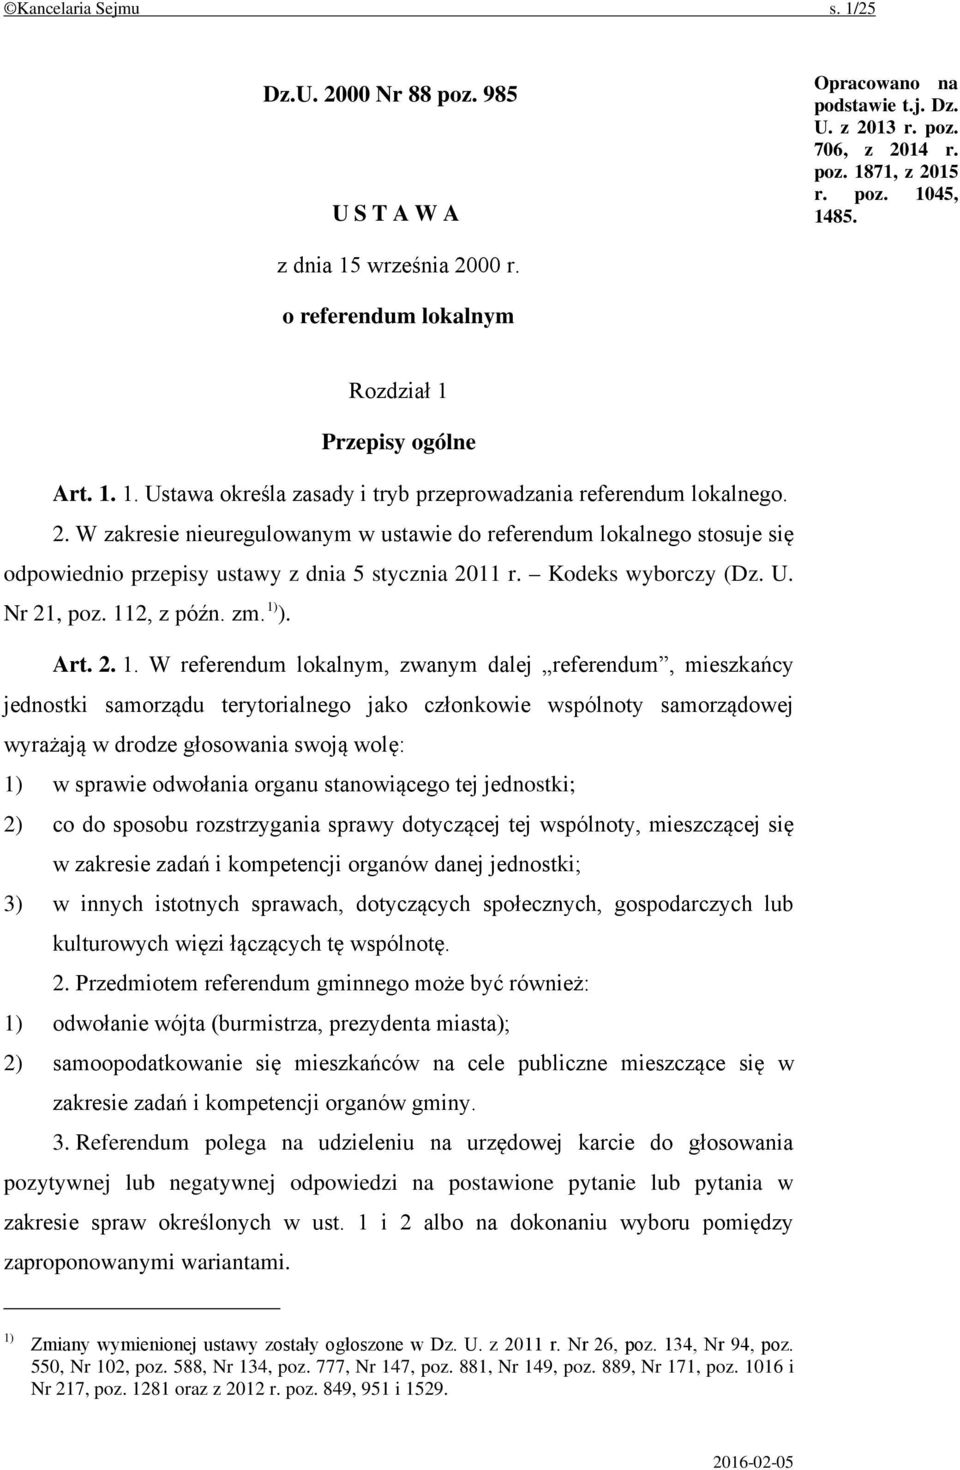 W zakresie nieuregulowanym w ustawie do referendum lokalnego stosuje się odpowiednio przepisy ustawy z dnia 5 stycznia 2011 r. Kodeks wyborczy (Dz. U. Nr 21, poz. 11